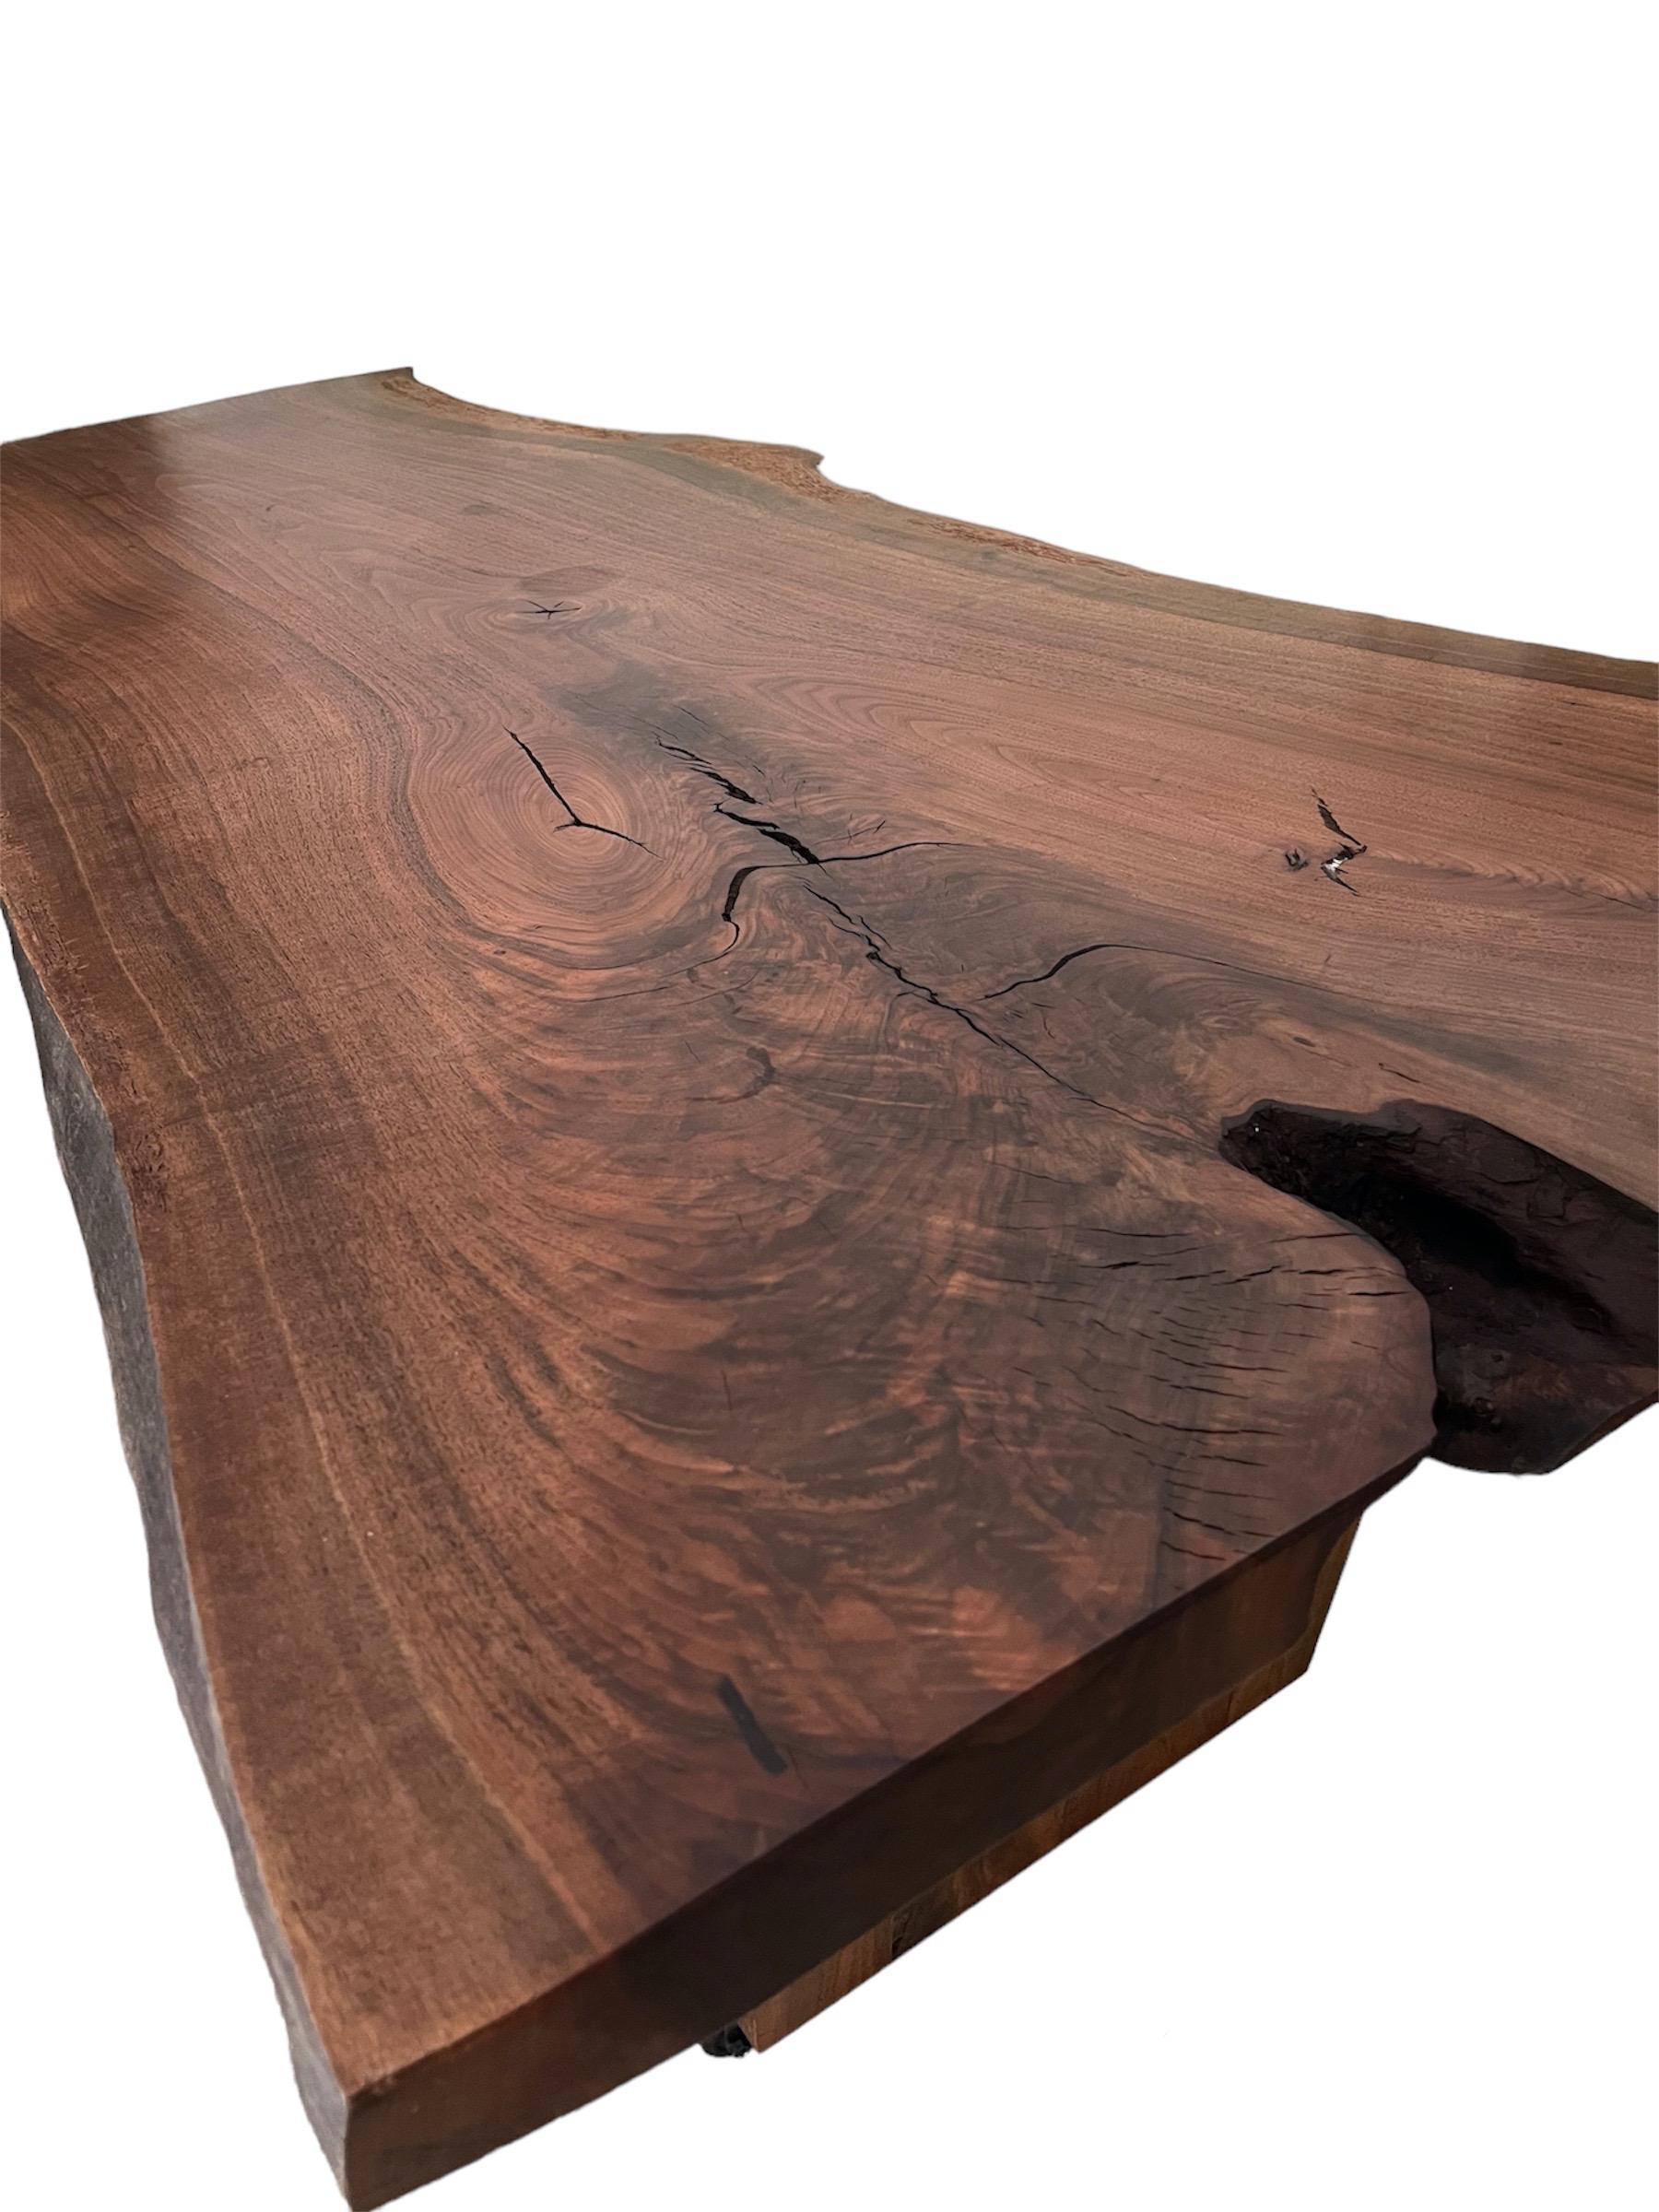 Élevez votre espace de travail avec ce bureau/table italien du milieu du siècle, fabriqué en riche bois de noyer. Datant des années 1980, son design épuré incarne l'élégance et la fonctionnalité intemporelles, parfaites pour les bureaux à domicile